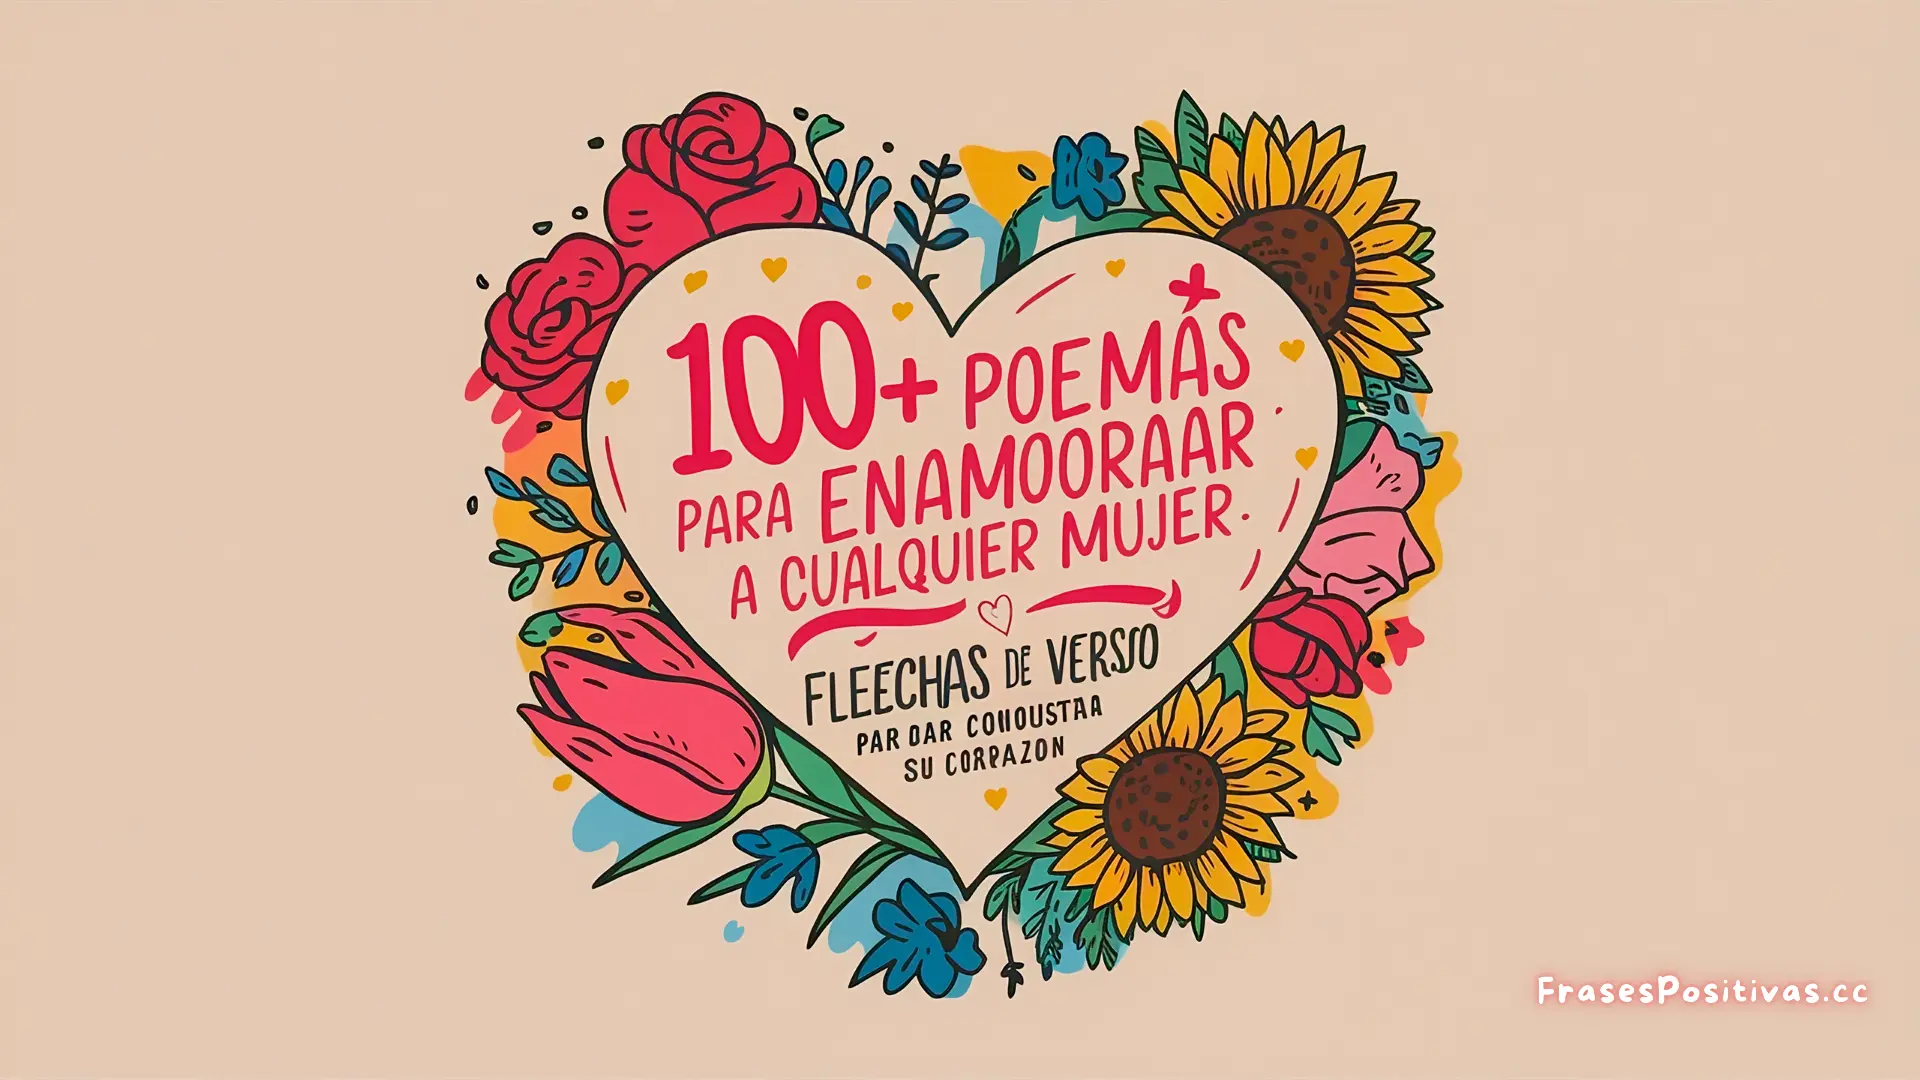 100+ Poemas para Enamorar a Cualquier Mujer: Flechas de Verso para Conquistar su Corazón